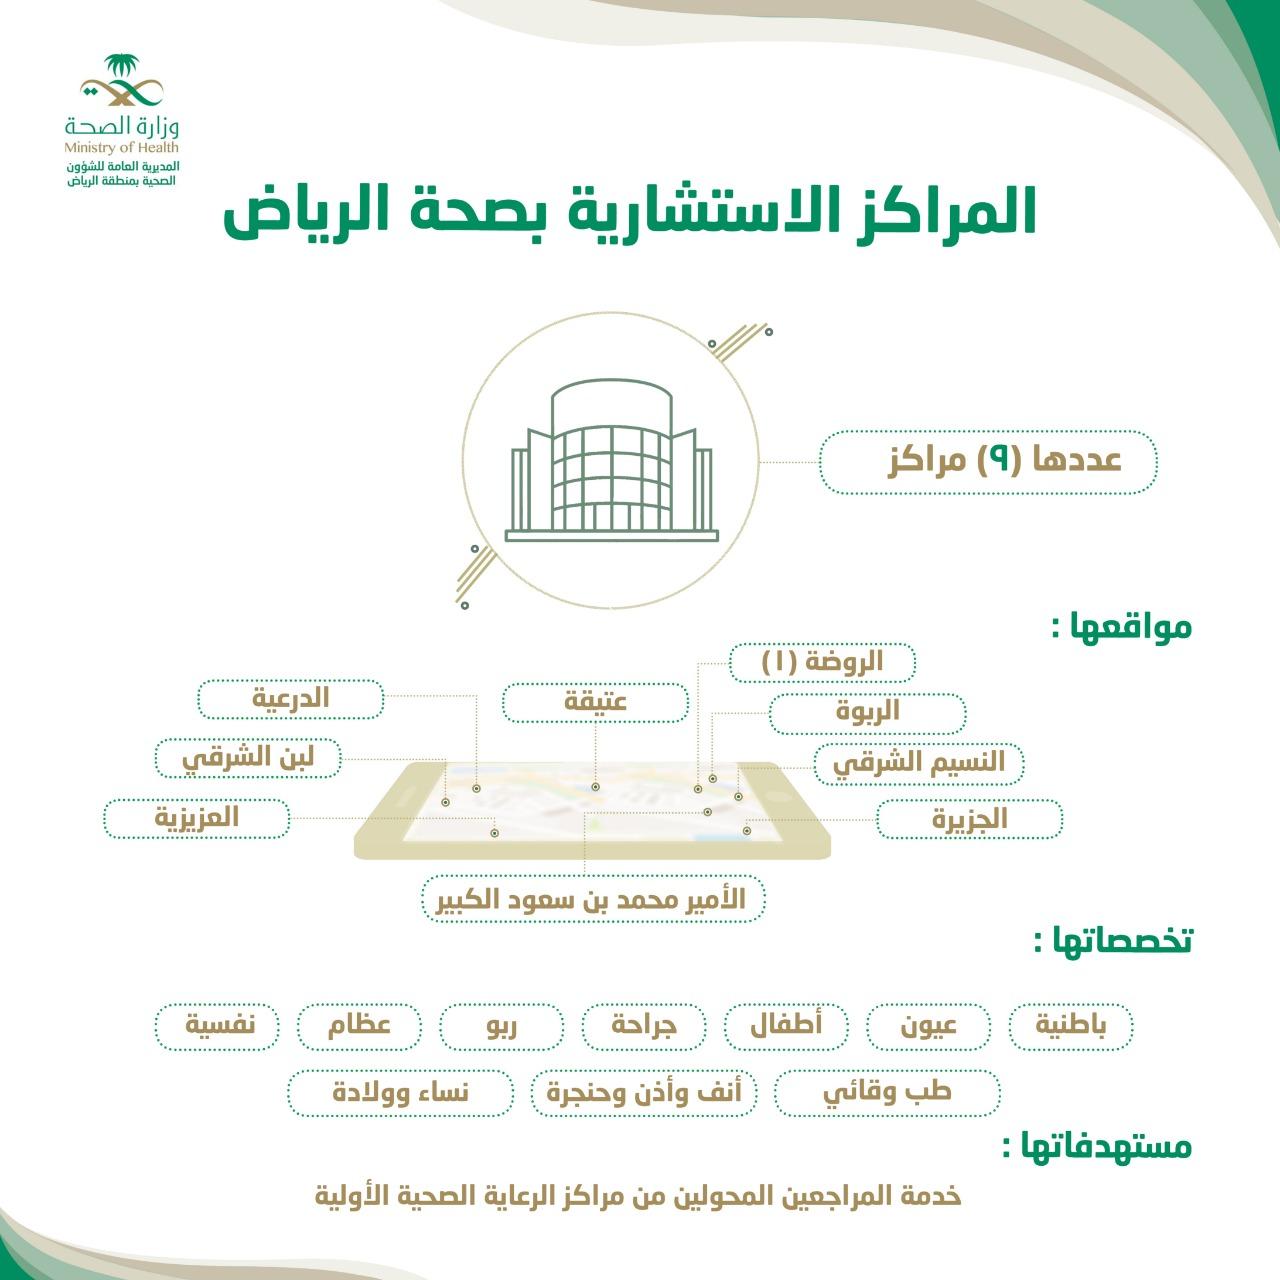 صحة الرياض لدينا 425 مركز صحي مجهزة لخدمة سكان العاصمة الرياض ومحافظاتها